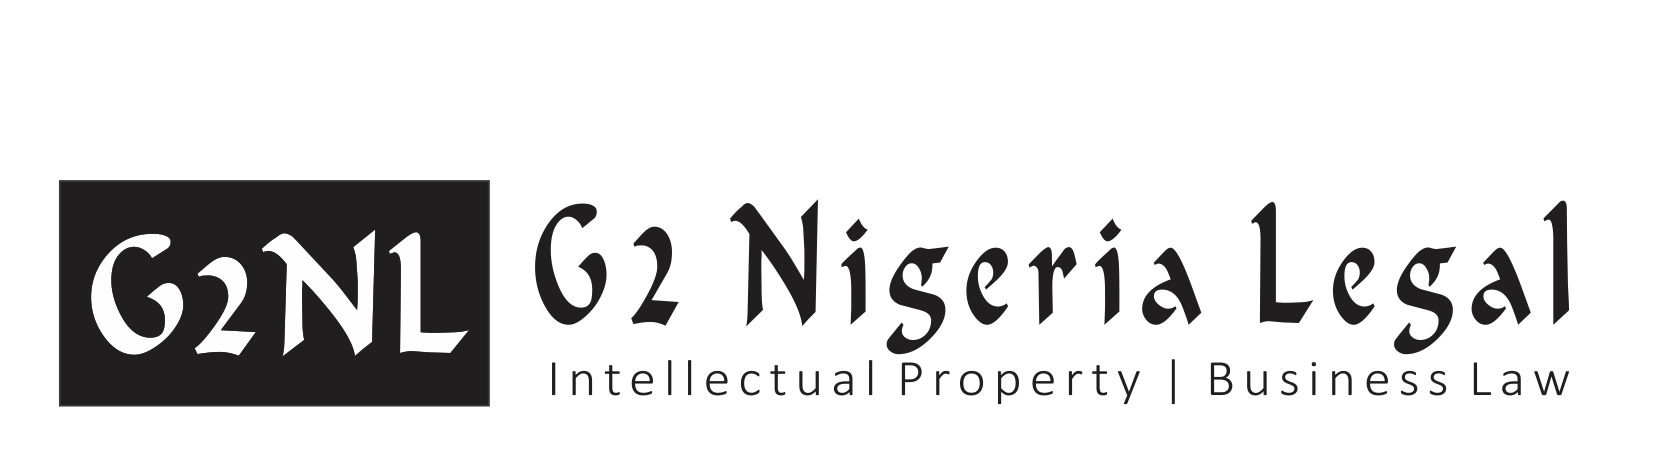 尼日利亚的商标律师尼日利亚的商标律师尼日利亚的商标律师尼日利亚的商标律师尼日利亚的专利律师尼日利亚的专利律师尼日利亚的商标律师尼日利亚的商标律师和尼日利亚的专利律师尼日利亚的商标和专利律师